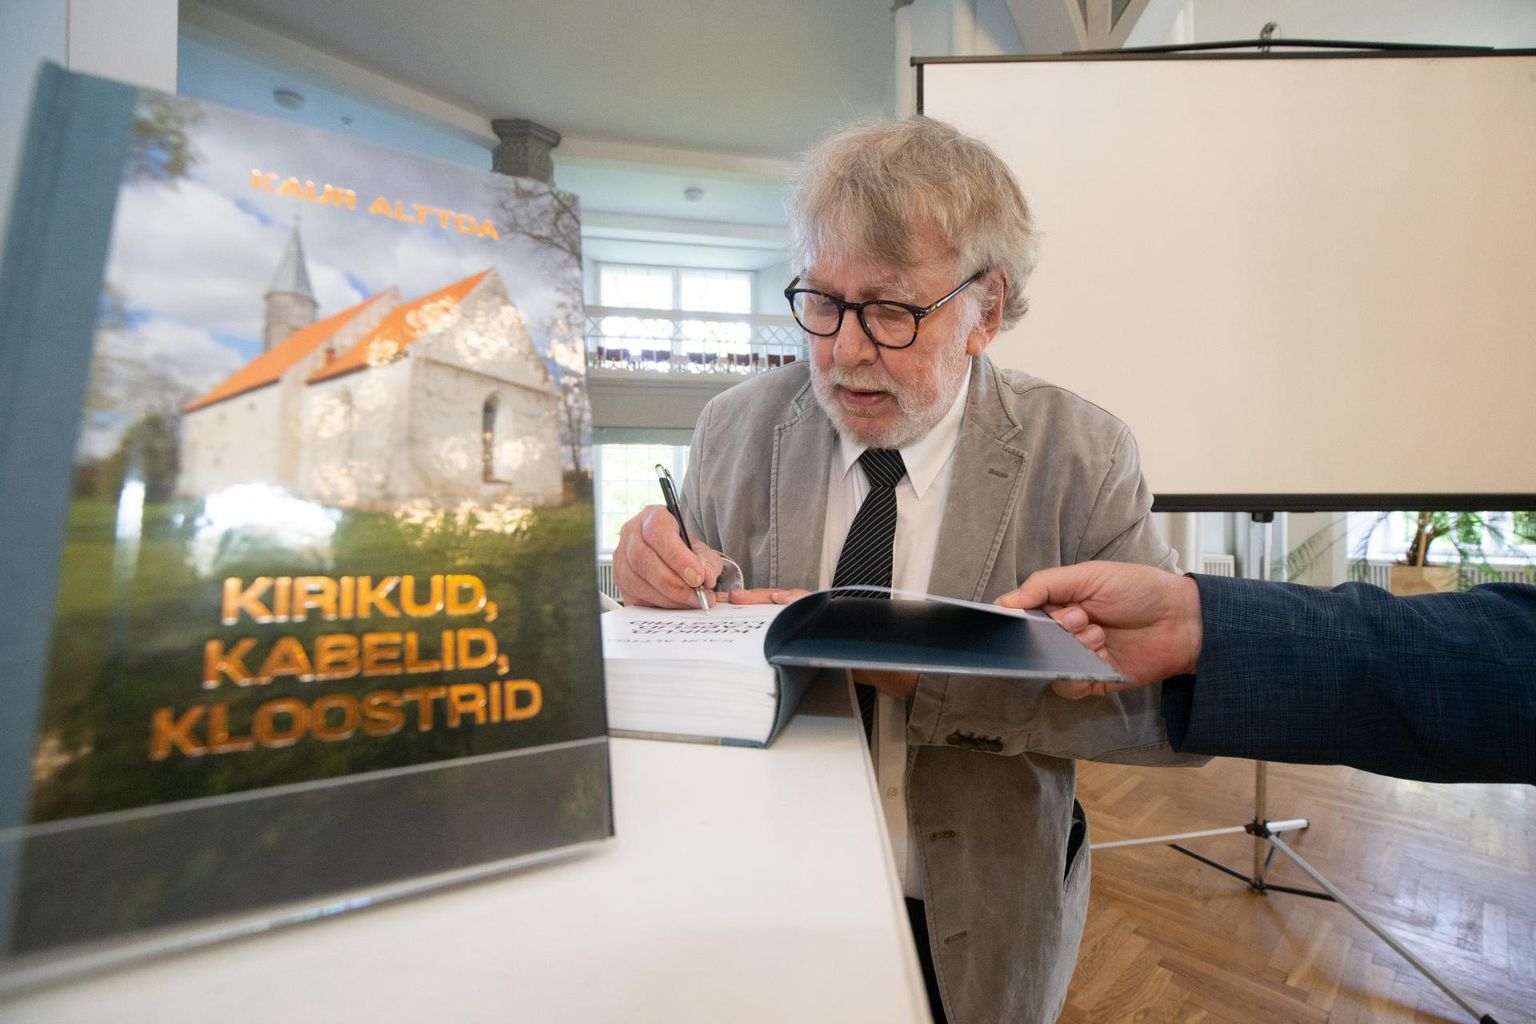 Kaur Alttoa andis Tartu ülikooli muuseumi valges saalis oma vastse artiklikogumiku tiitellehele autogrammi.